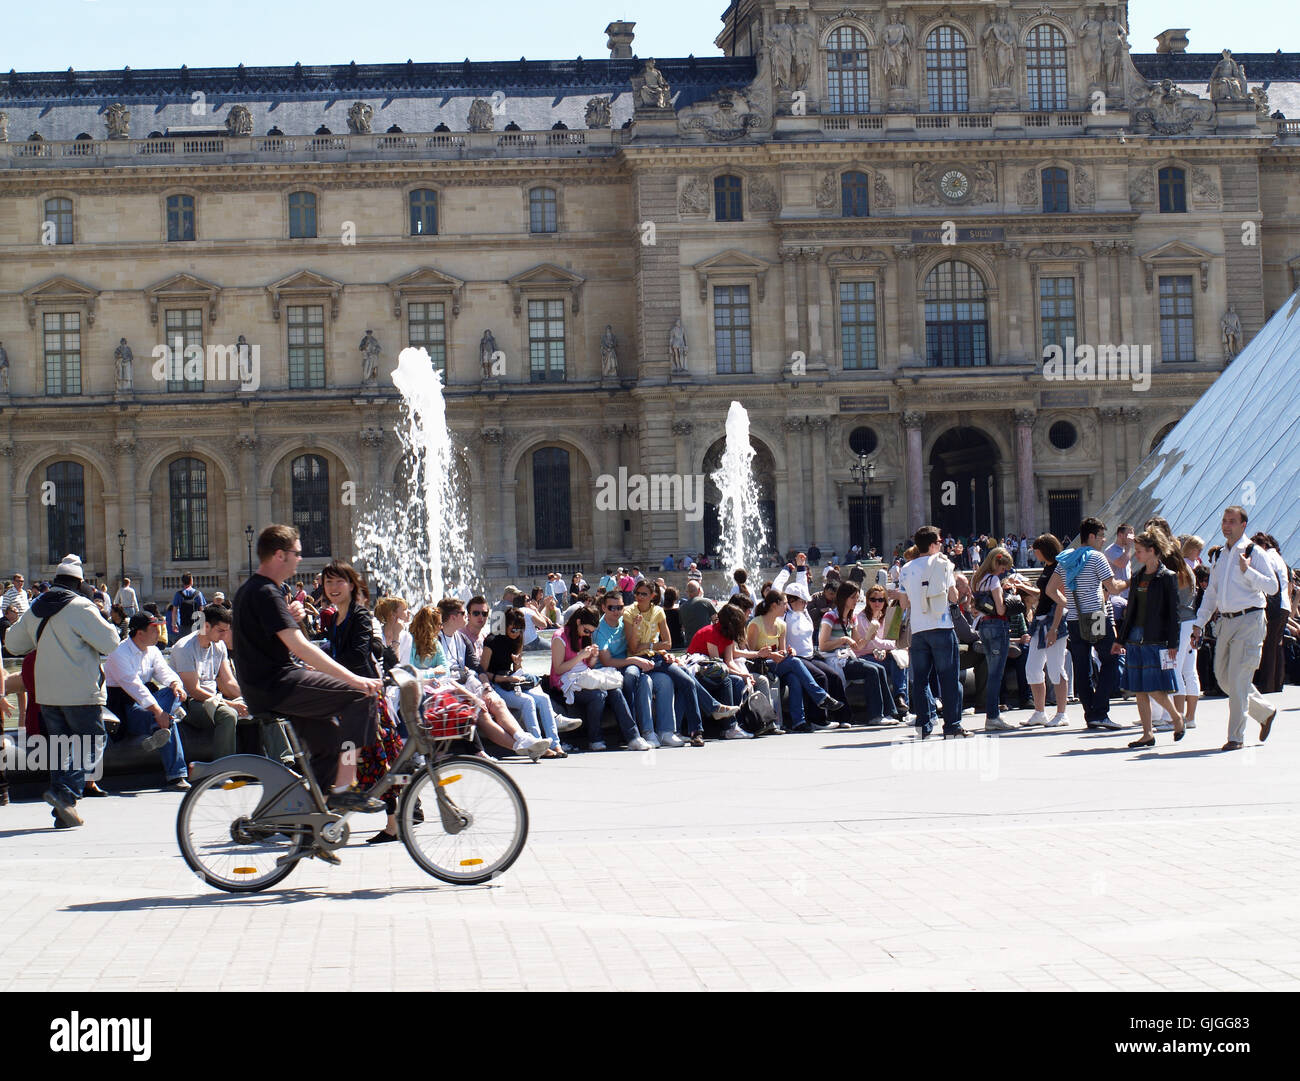 Les foules au Louvre Museum & Art Gallery, Paris, France, avec man riding bicycle communal Banque D'Images